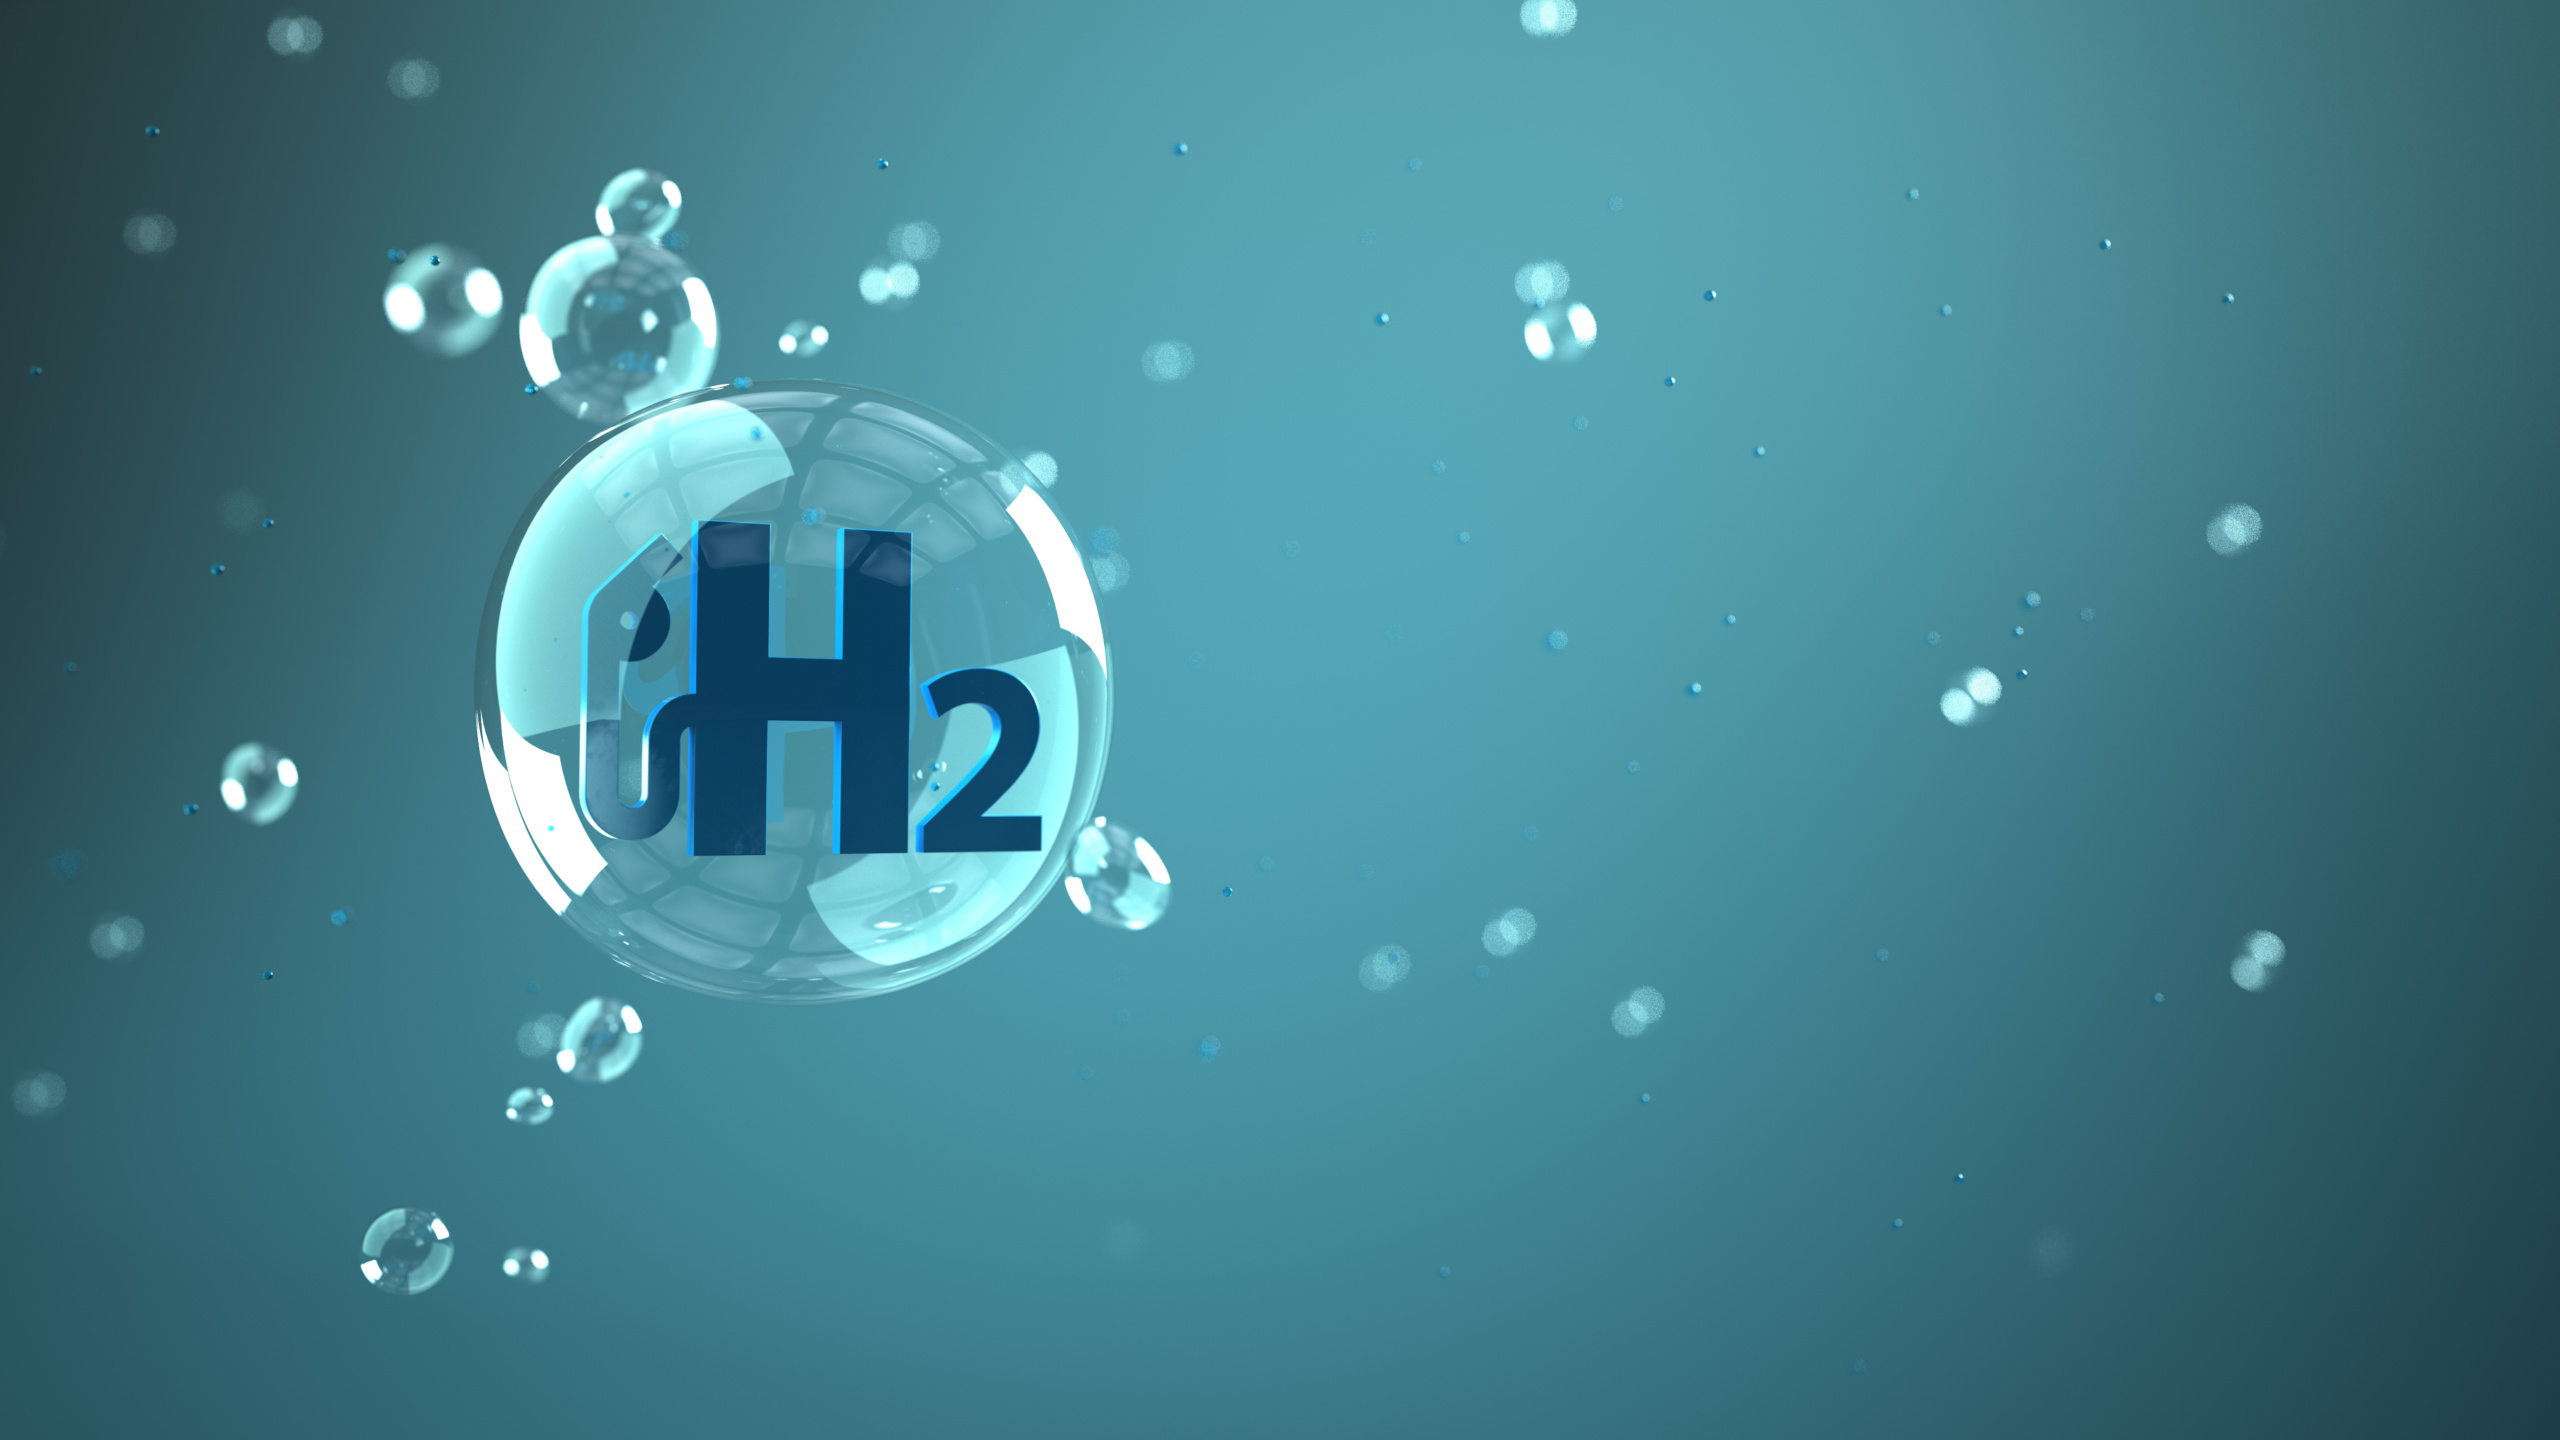 LIQUID-H “Hydrogen Liquefaction with Caloric Materials” - IFE